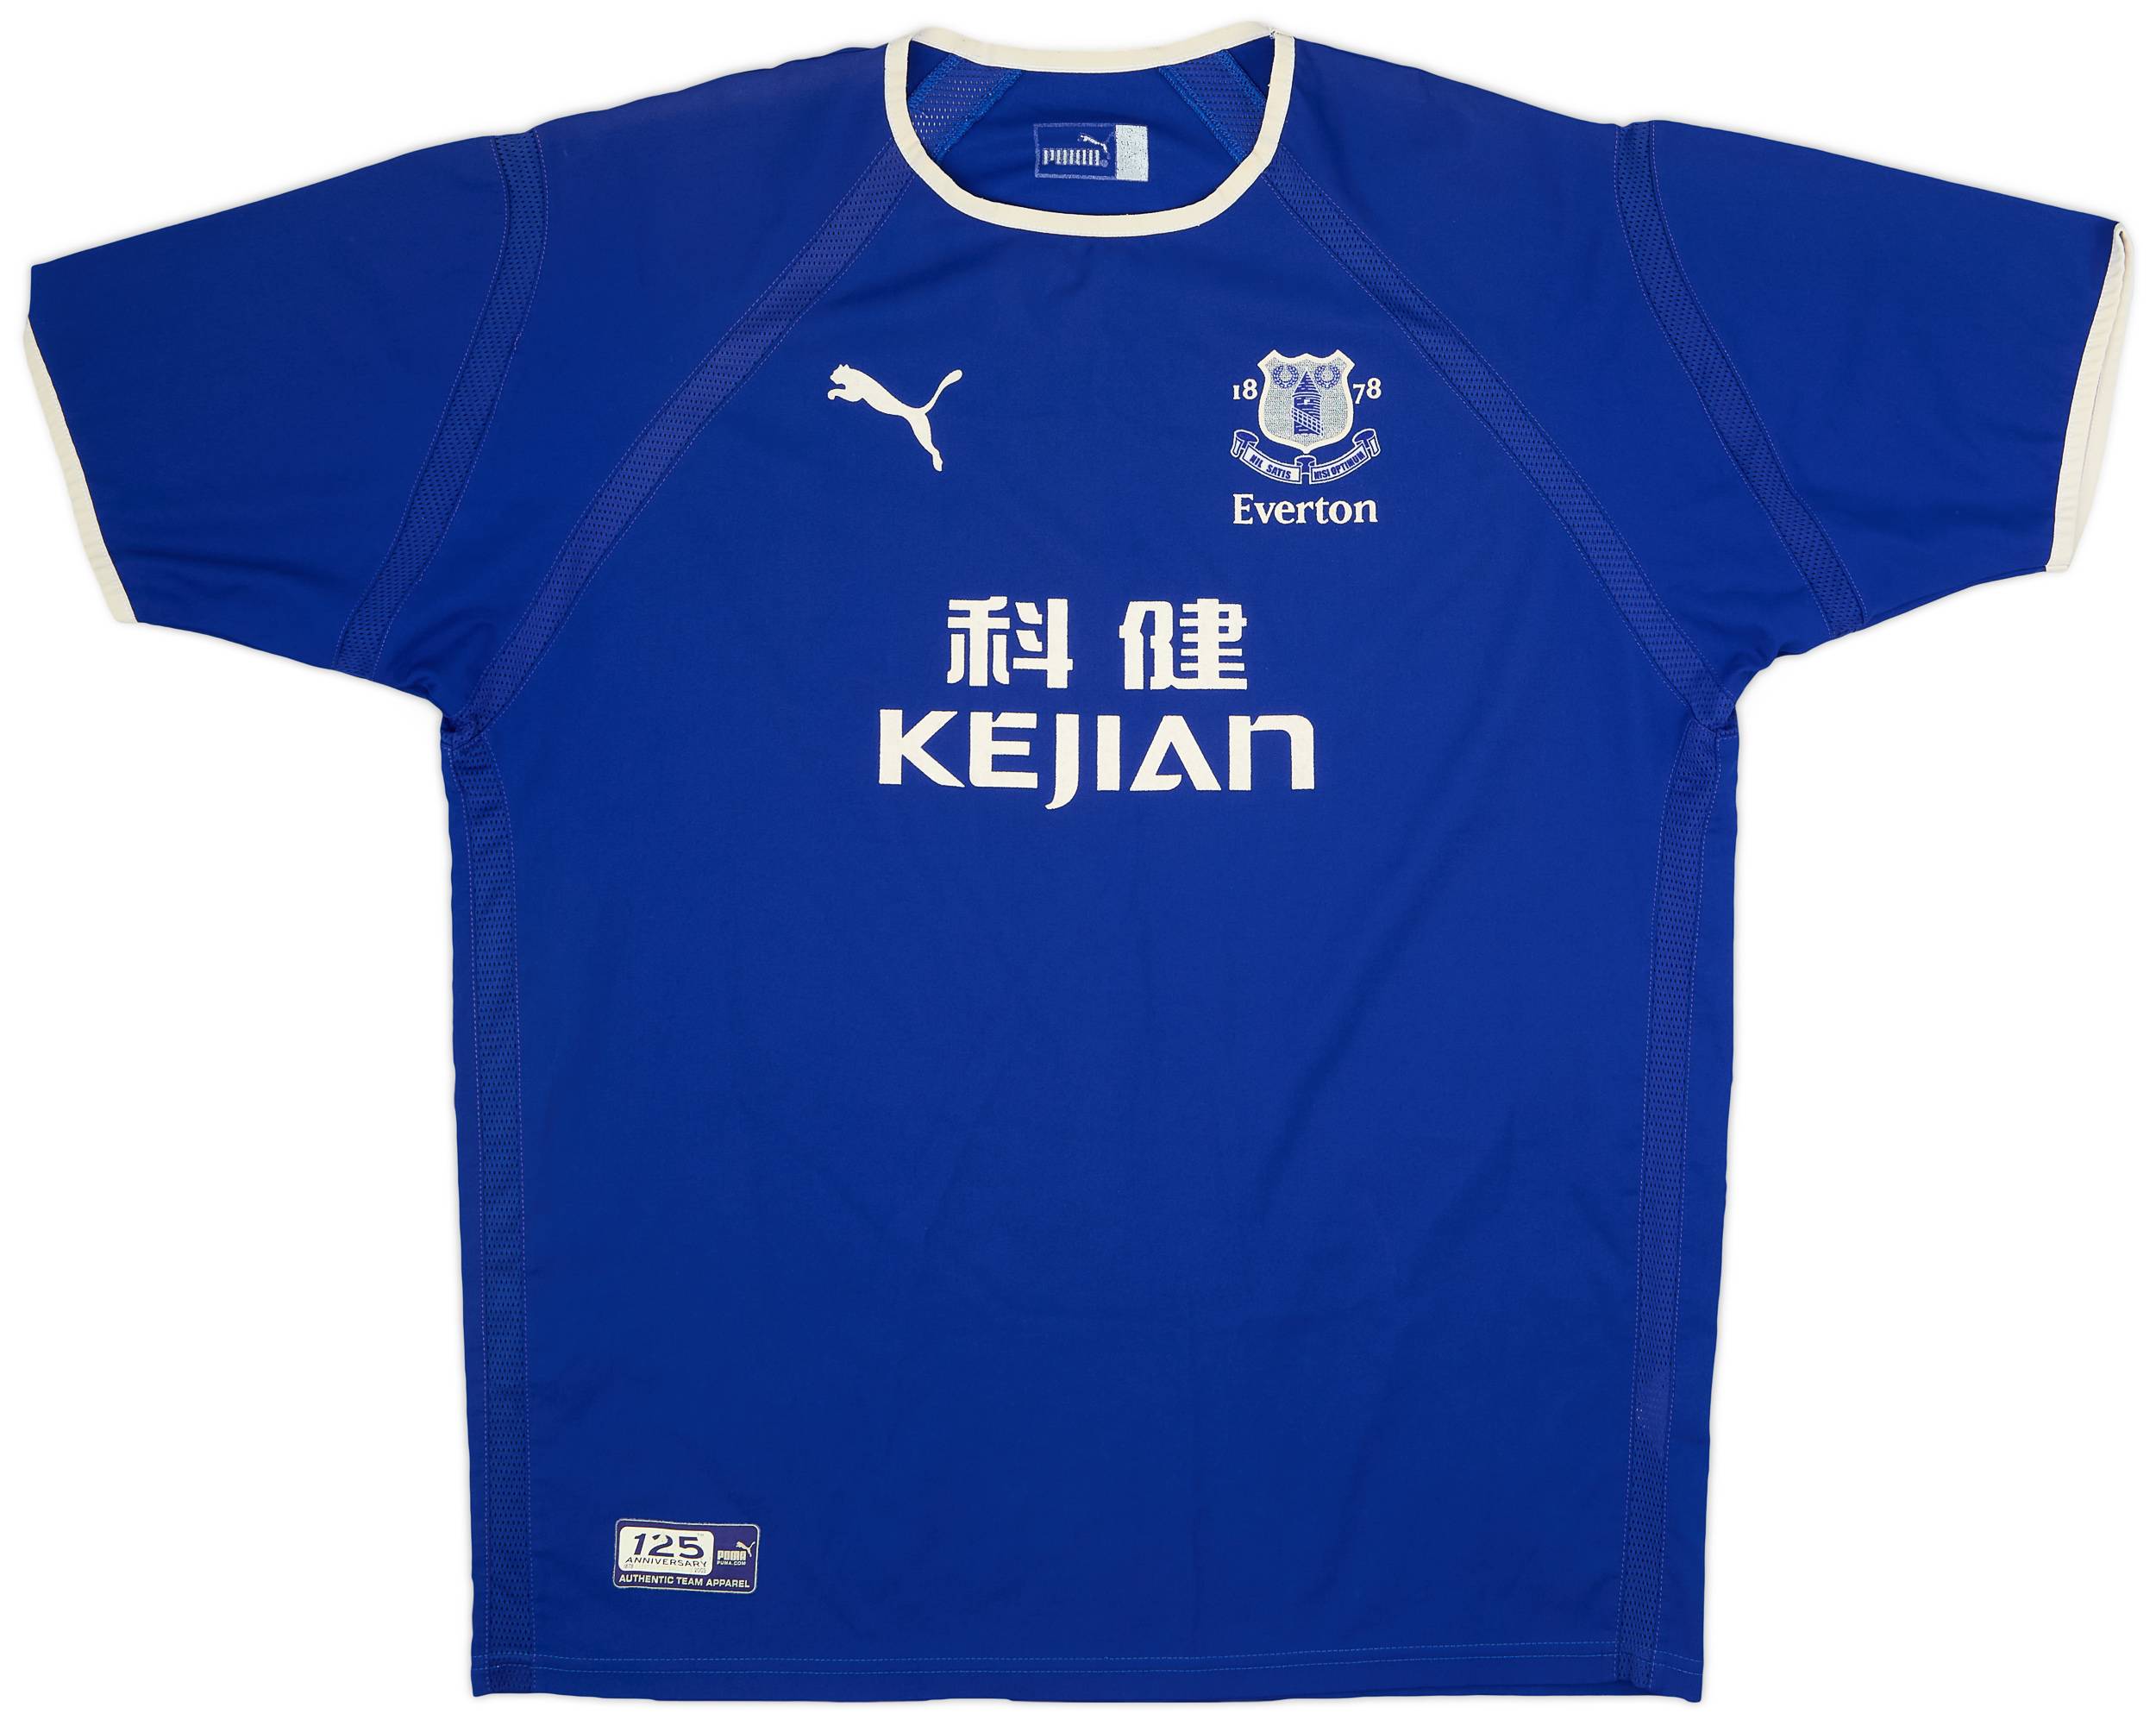 2003-04 Everton Home Shirt - 8/10 - (XL)